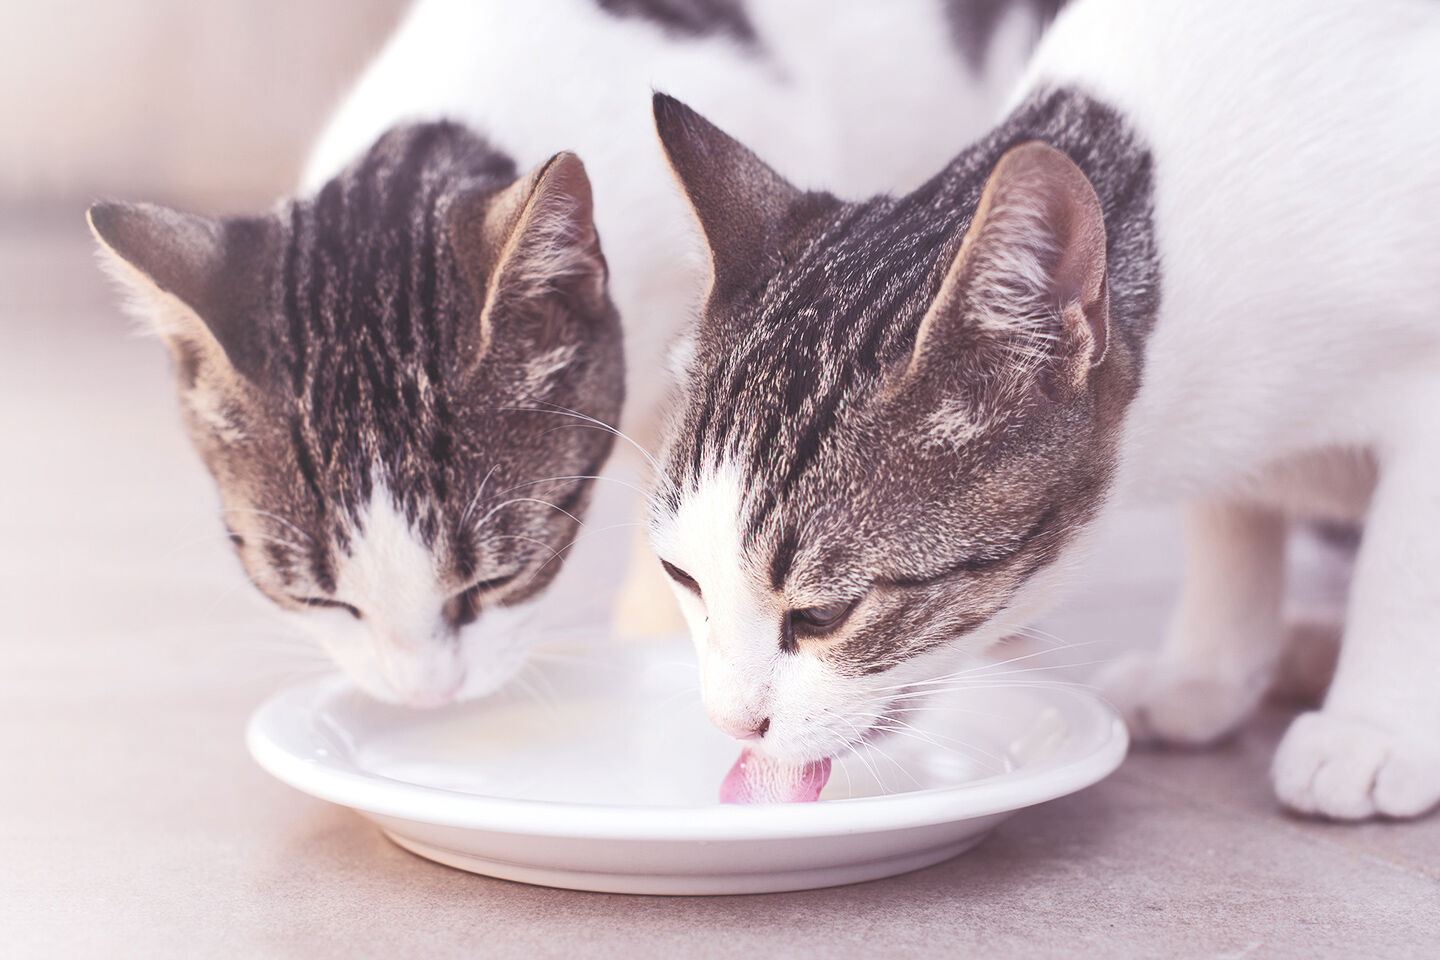 Zwei Katzen schlecken Milch von einem Teller.